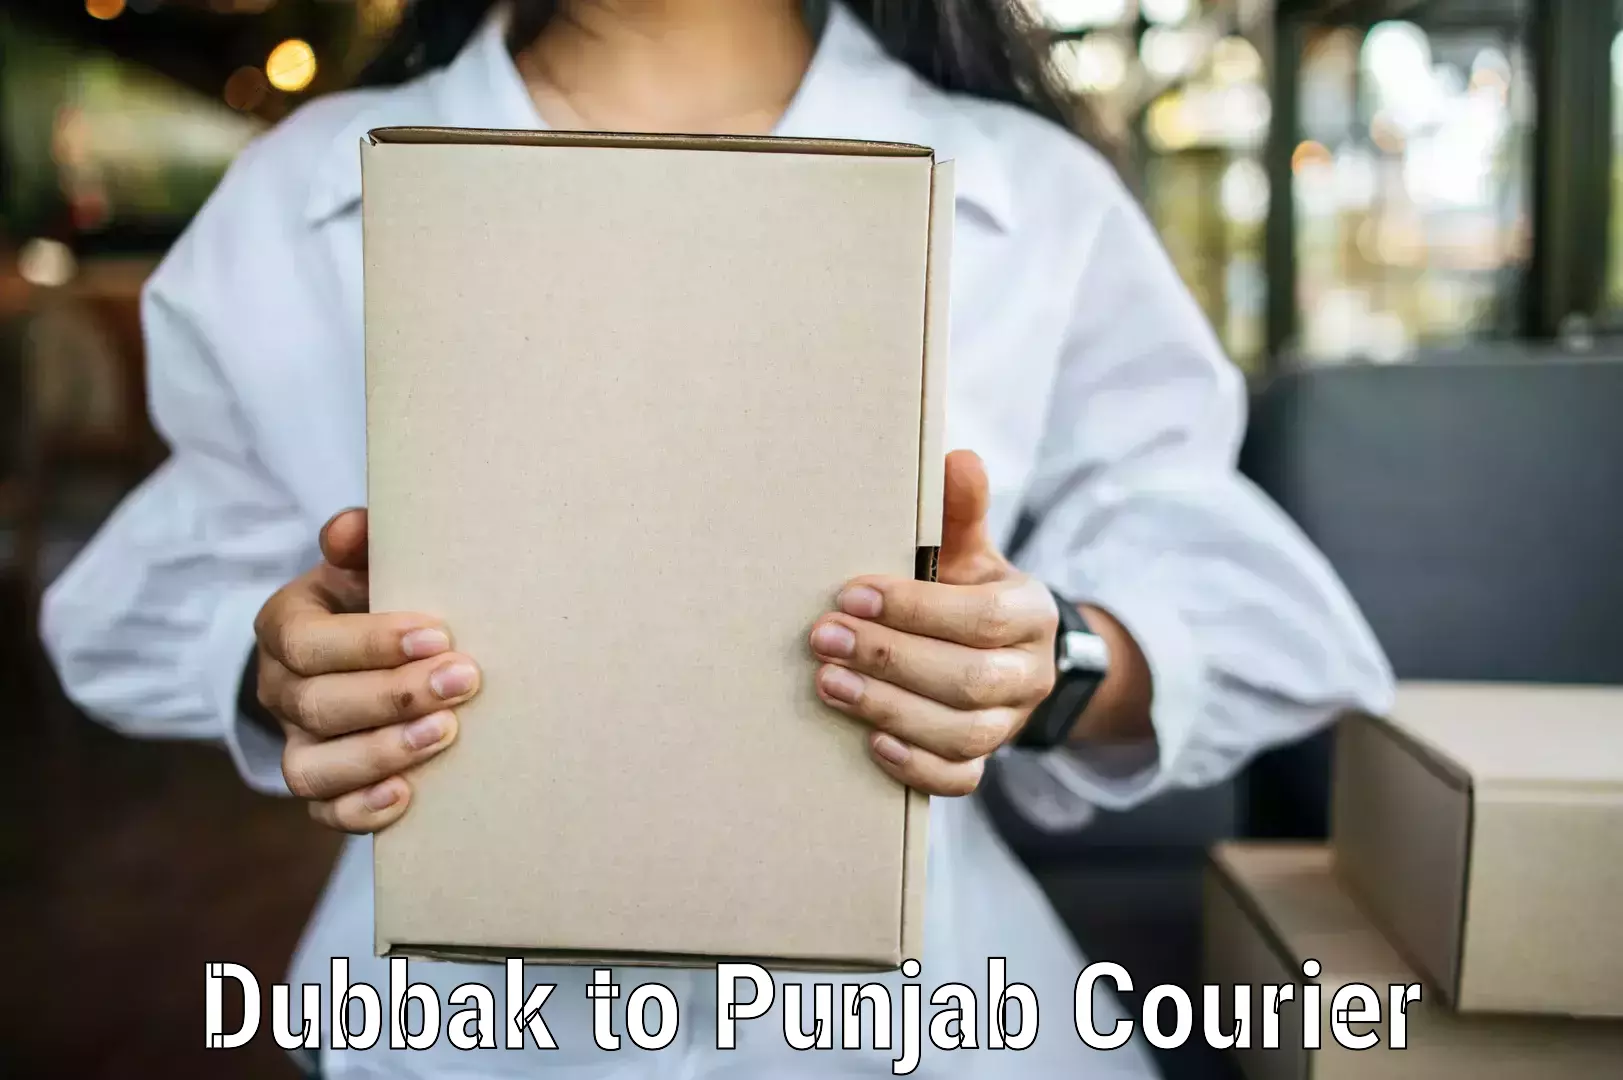 Courier app Dubbak to Punjab